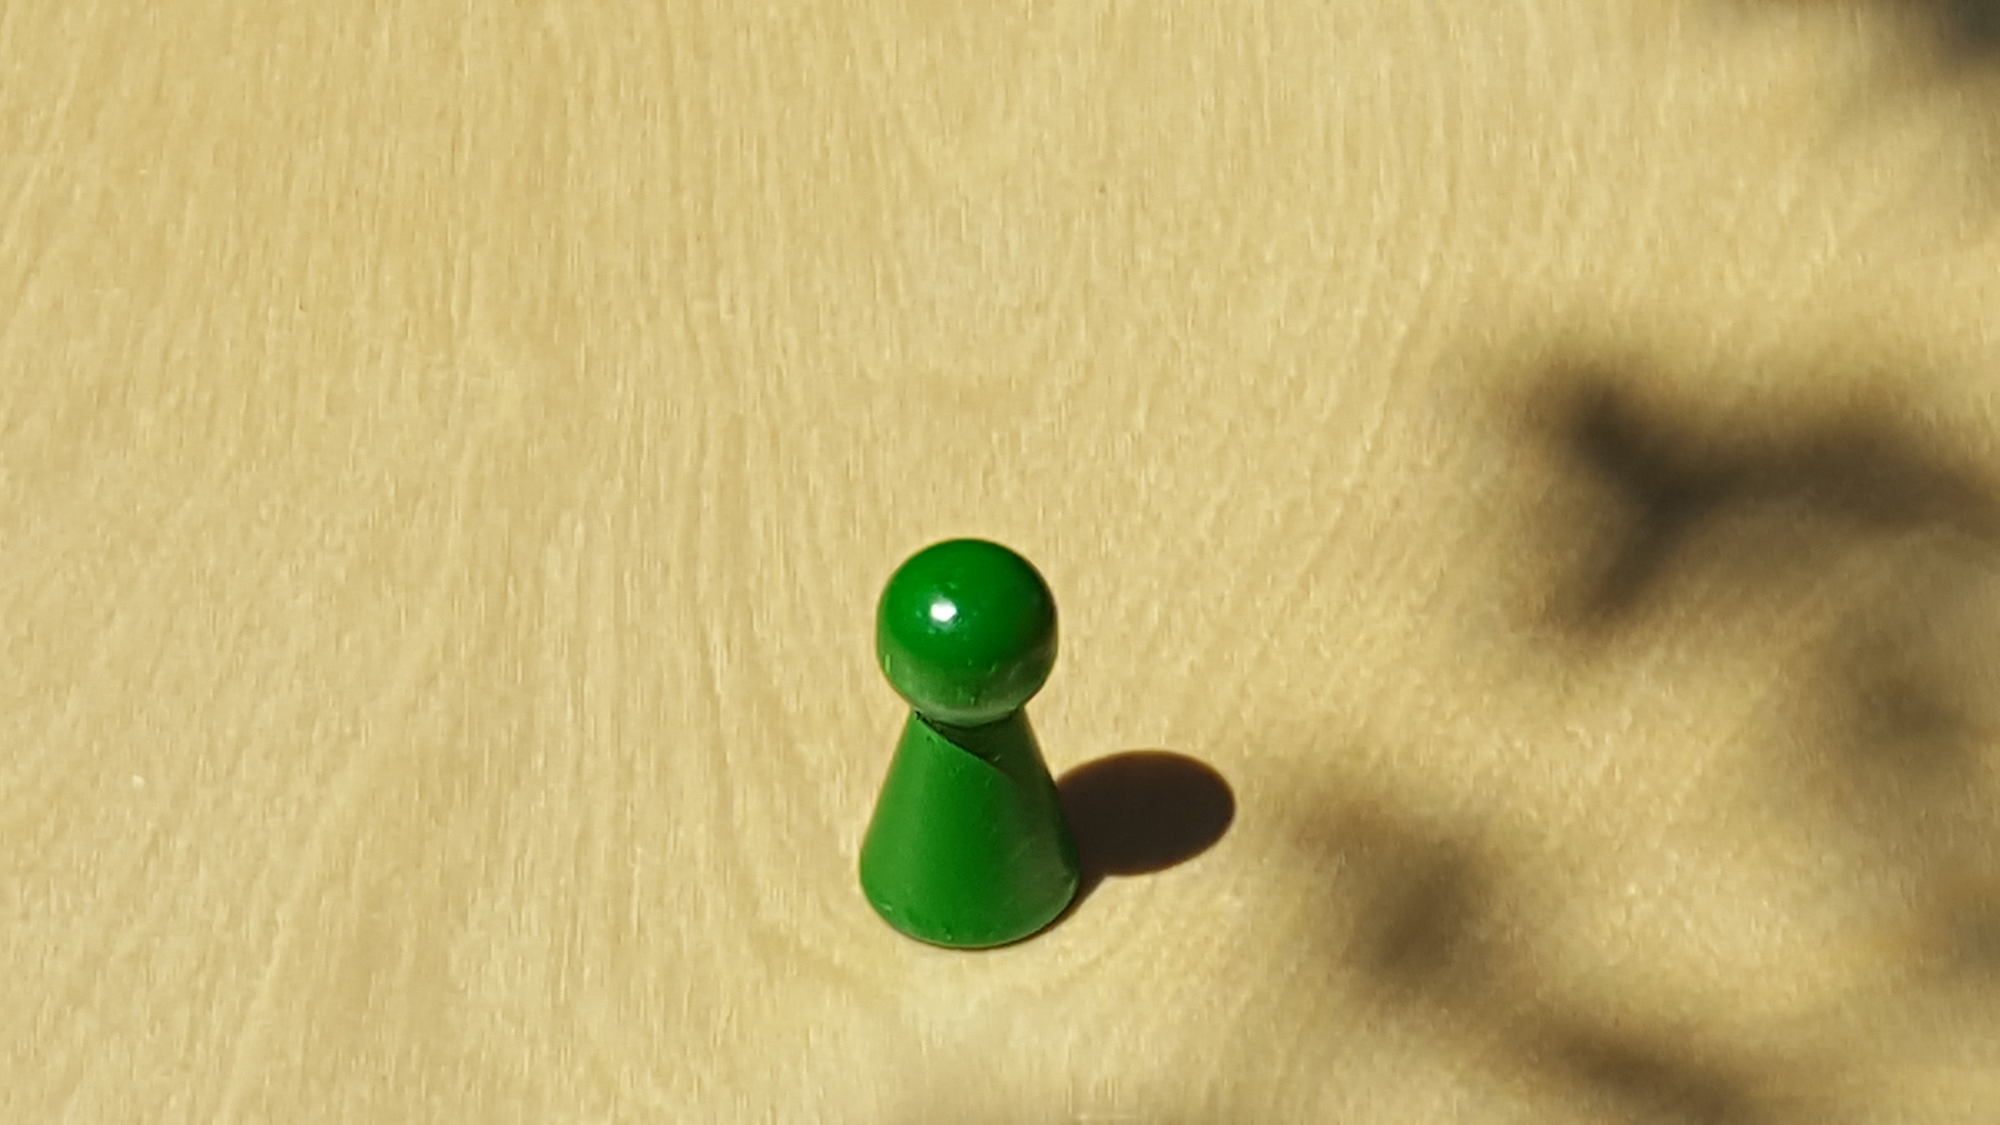 www.systembrett.at · Systembrett-Artikel · Einzel-Figur 4 cm in grün (ohne Augen);